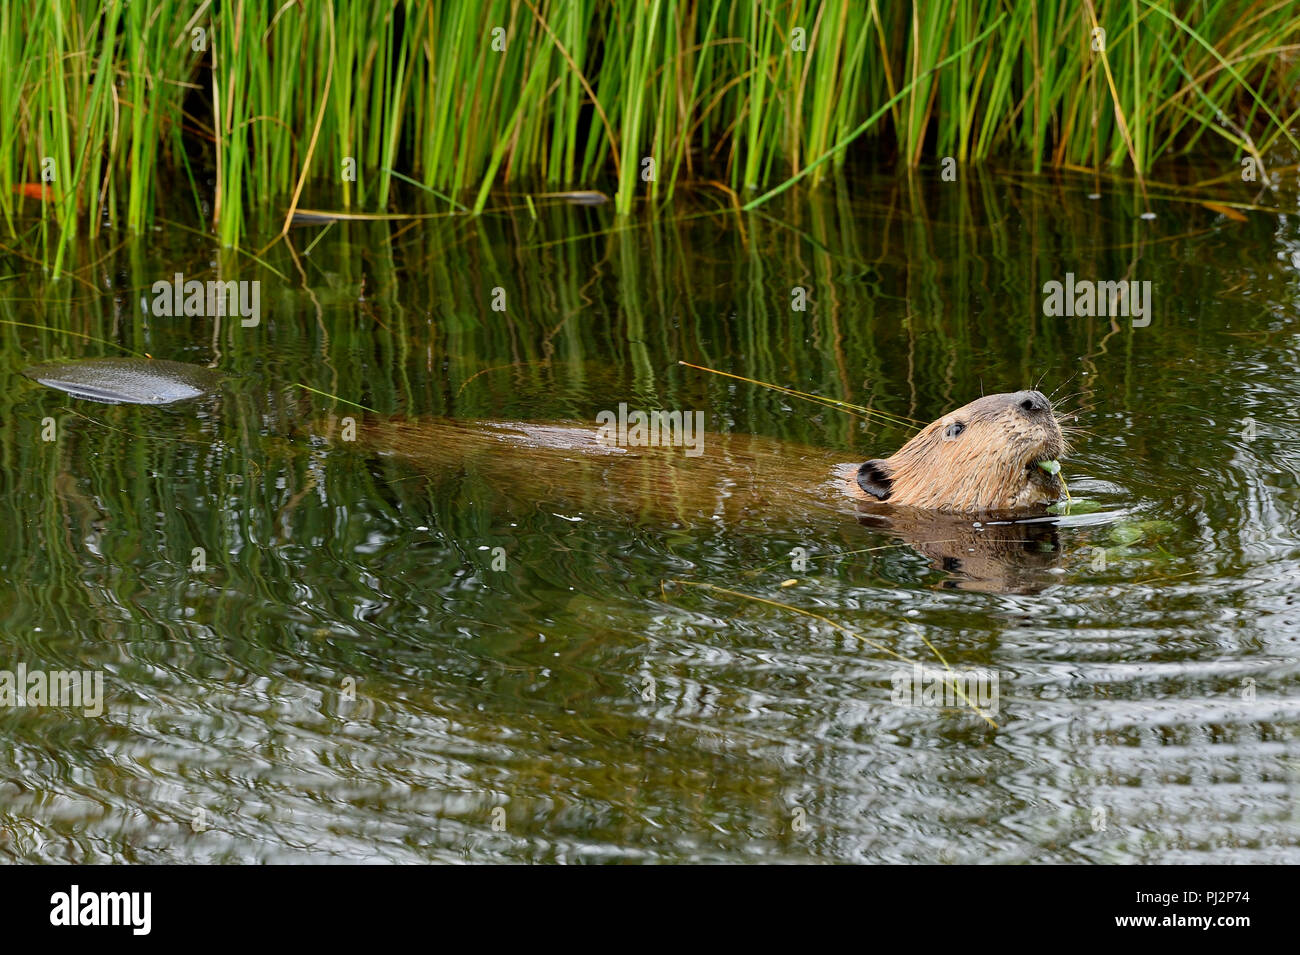 La vue latérale d'un castor (Castor canadensis), flottant sur l'eau se nourrissant de quelques feuilles fraîches tremble à son étang de castors près de Hinton en Alberta Banque D'Images